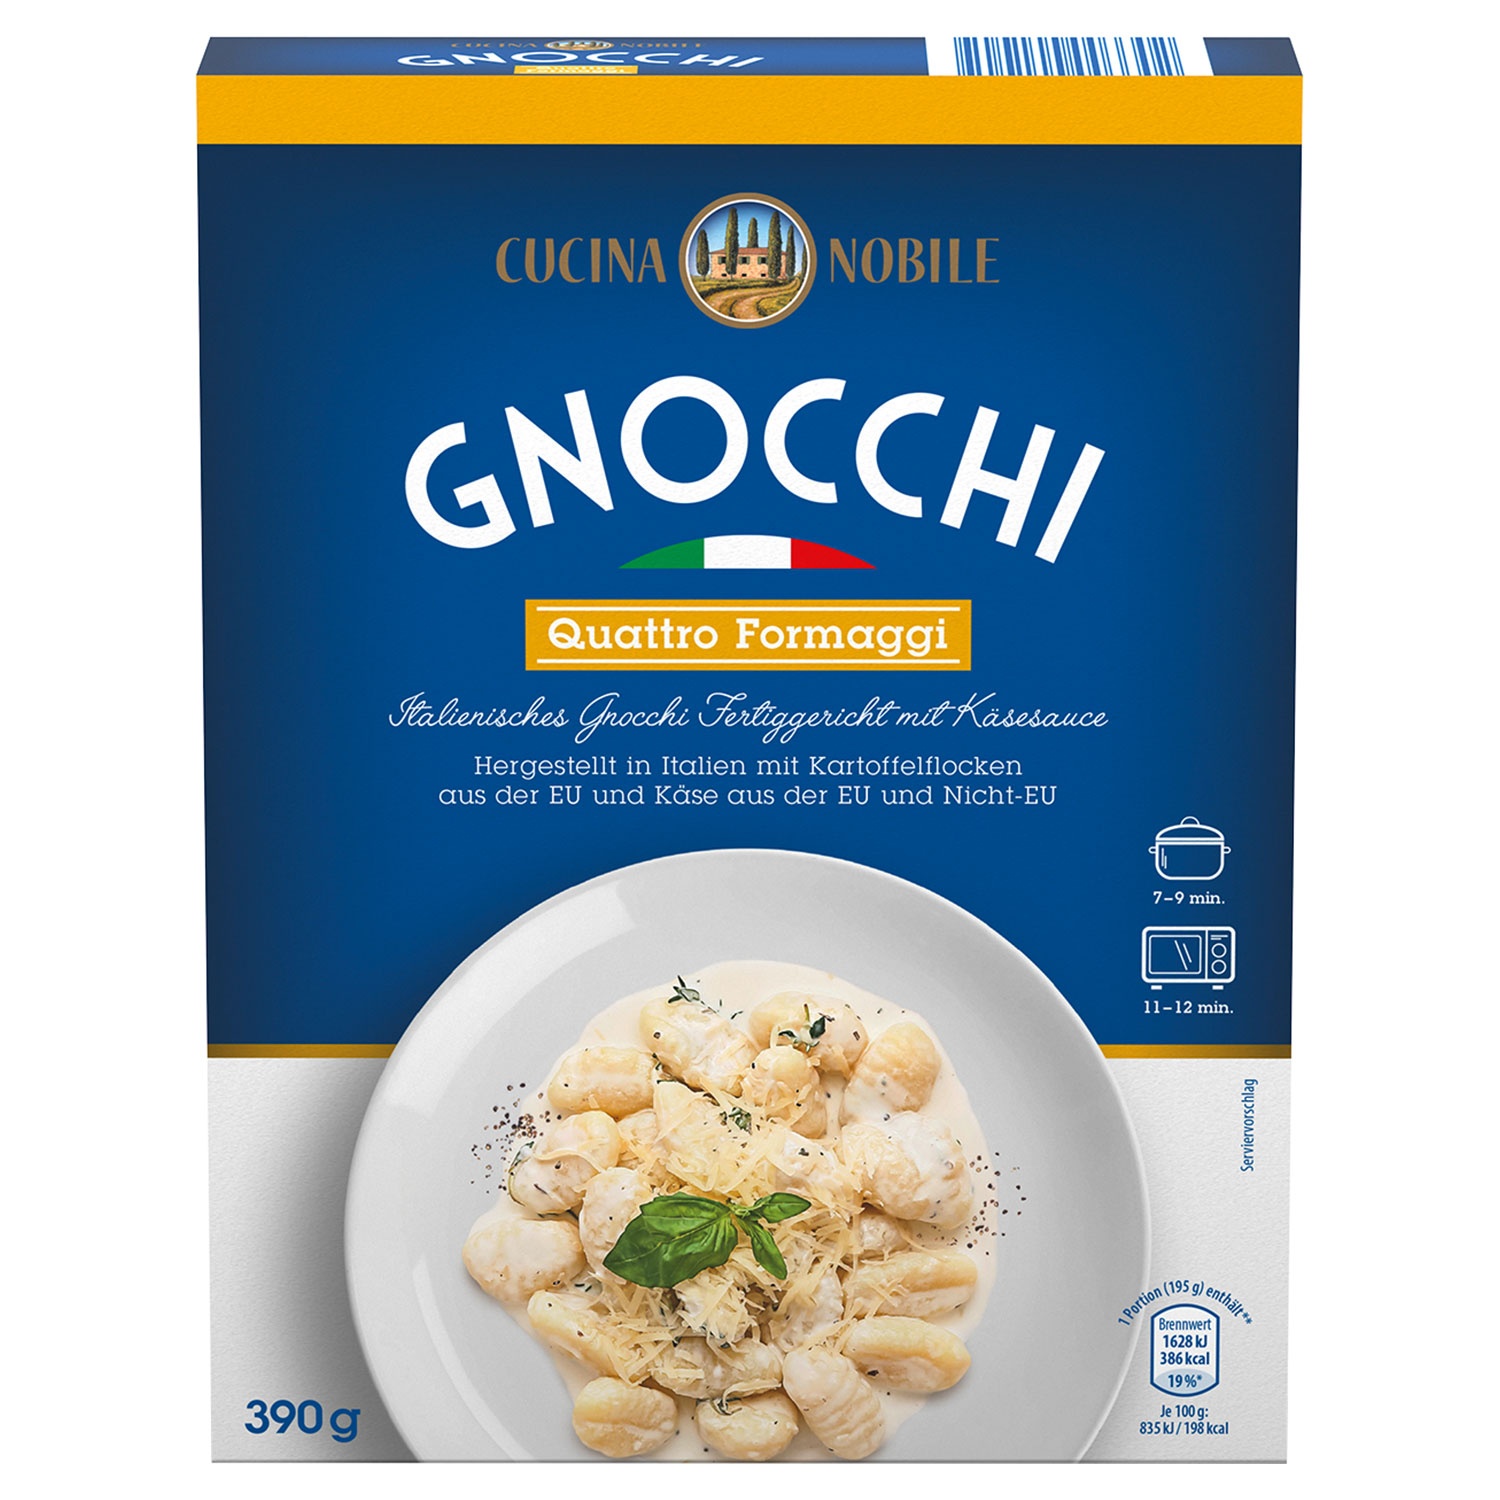 CUCINA NOBILE Gnocchi 390 g